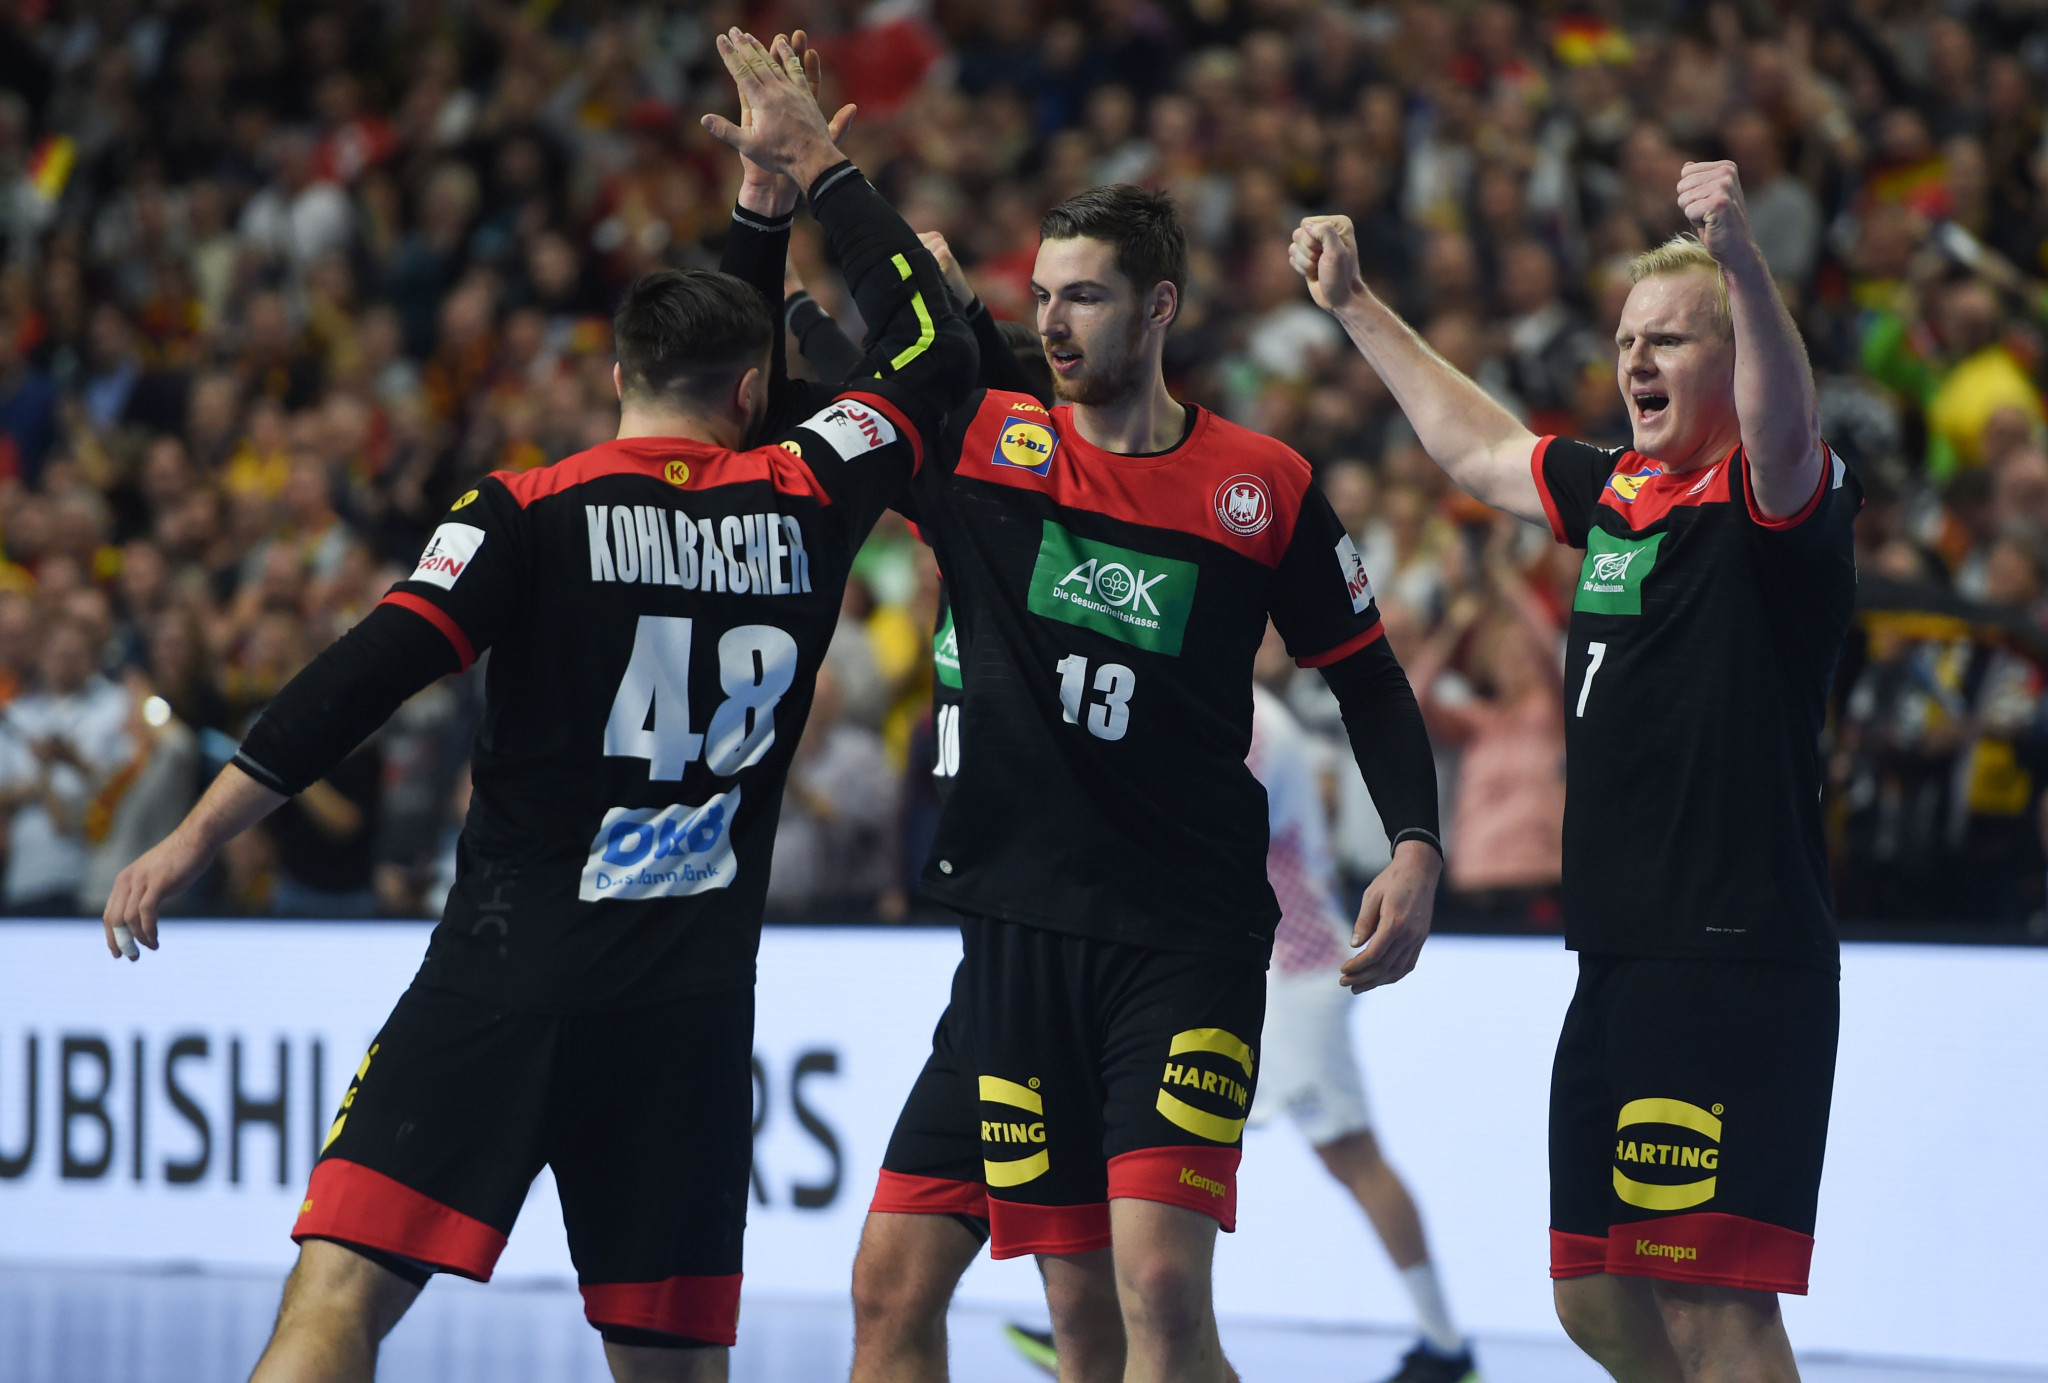 Germany and France seal semi-final spots at IHF Men's Handball World Championship